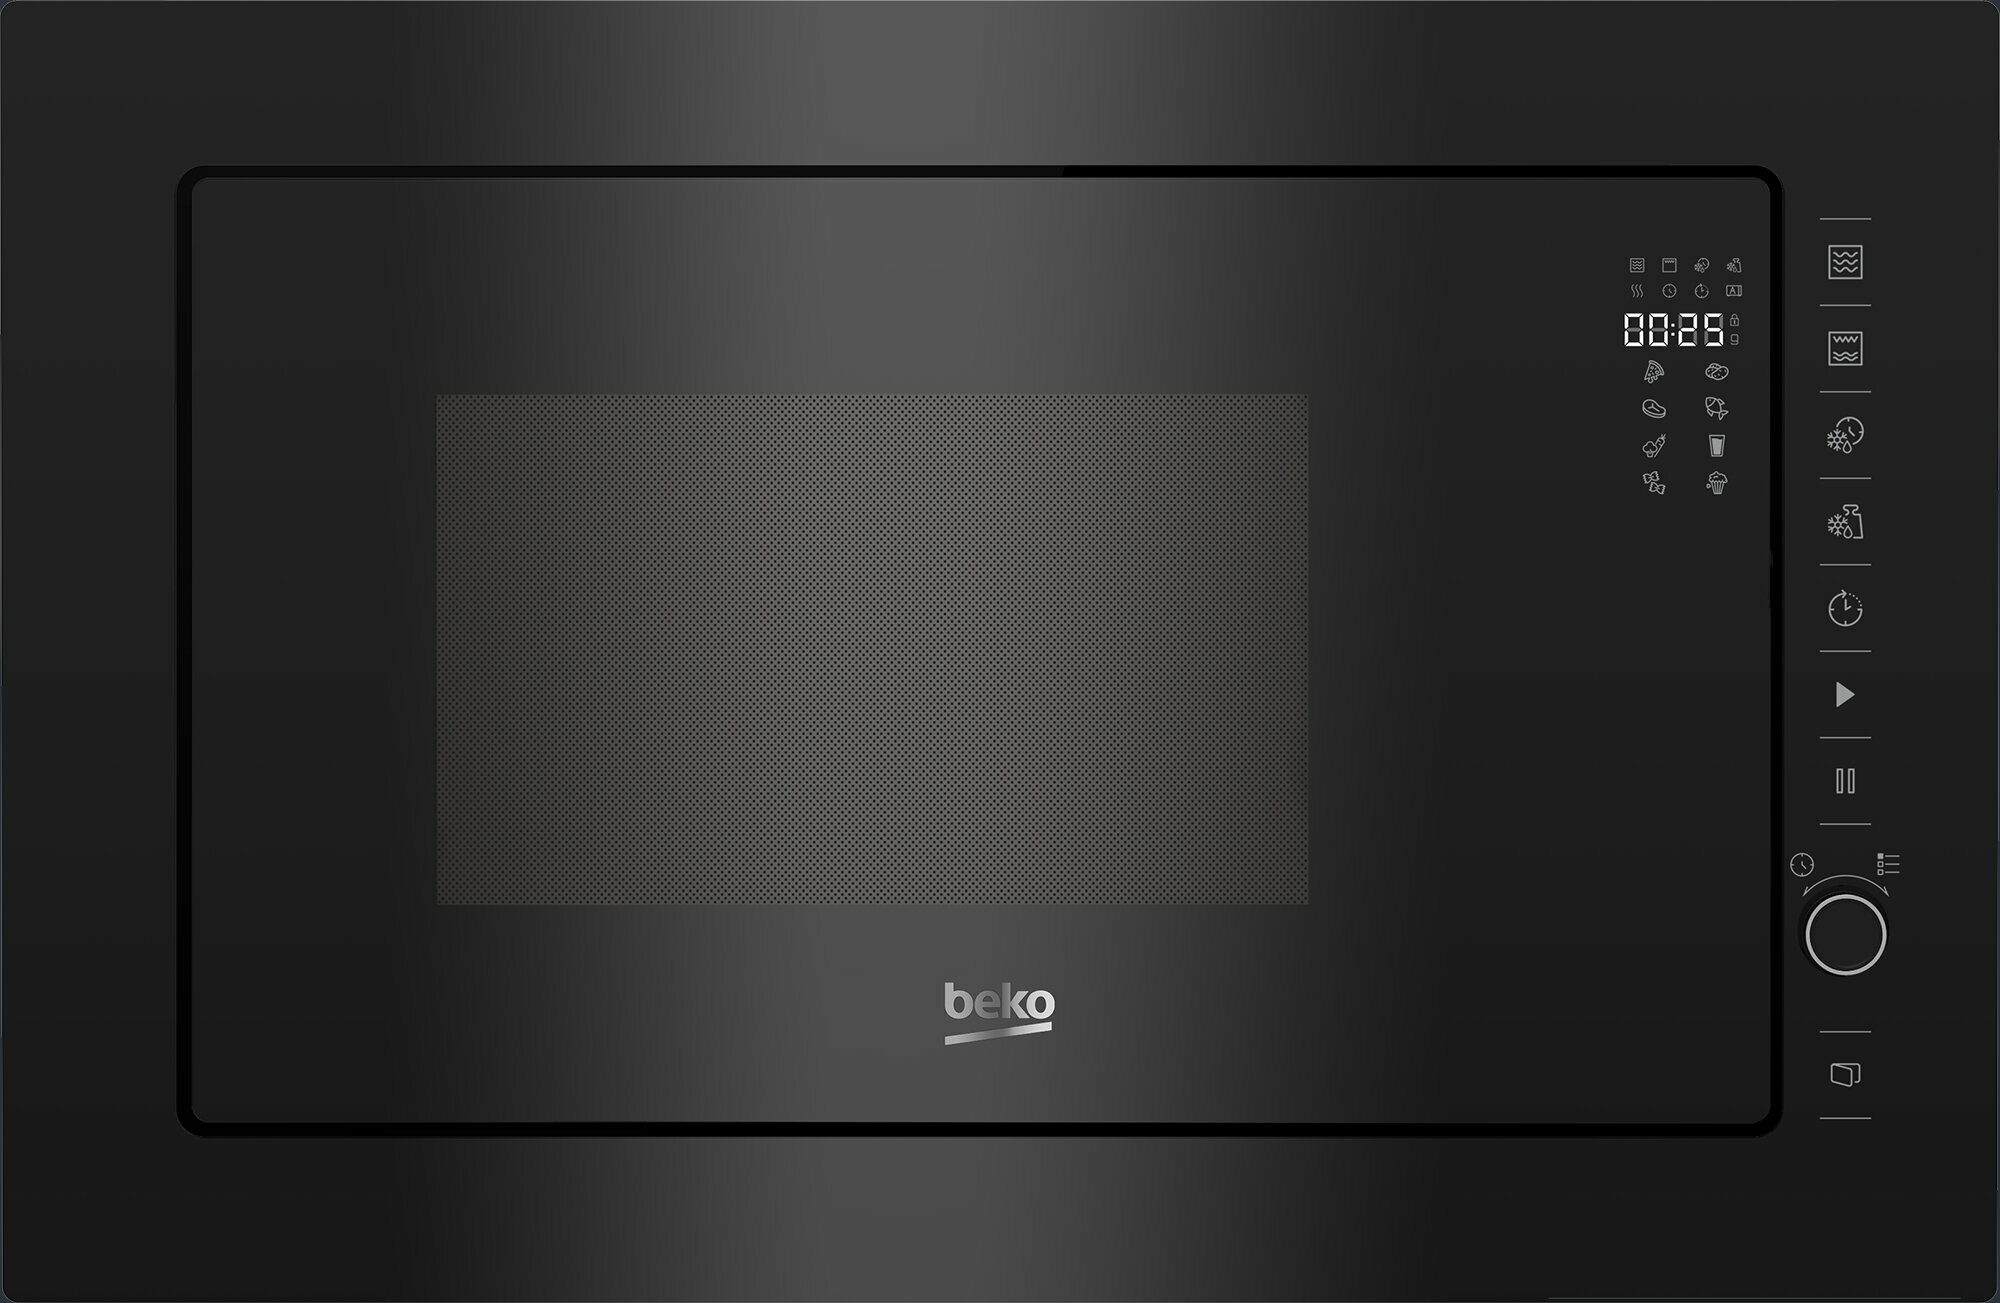 Микроволновая печь встраиваемая Beko BMGB25333BG, черный